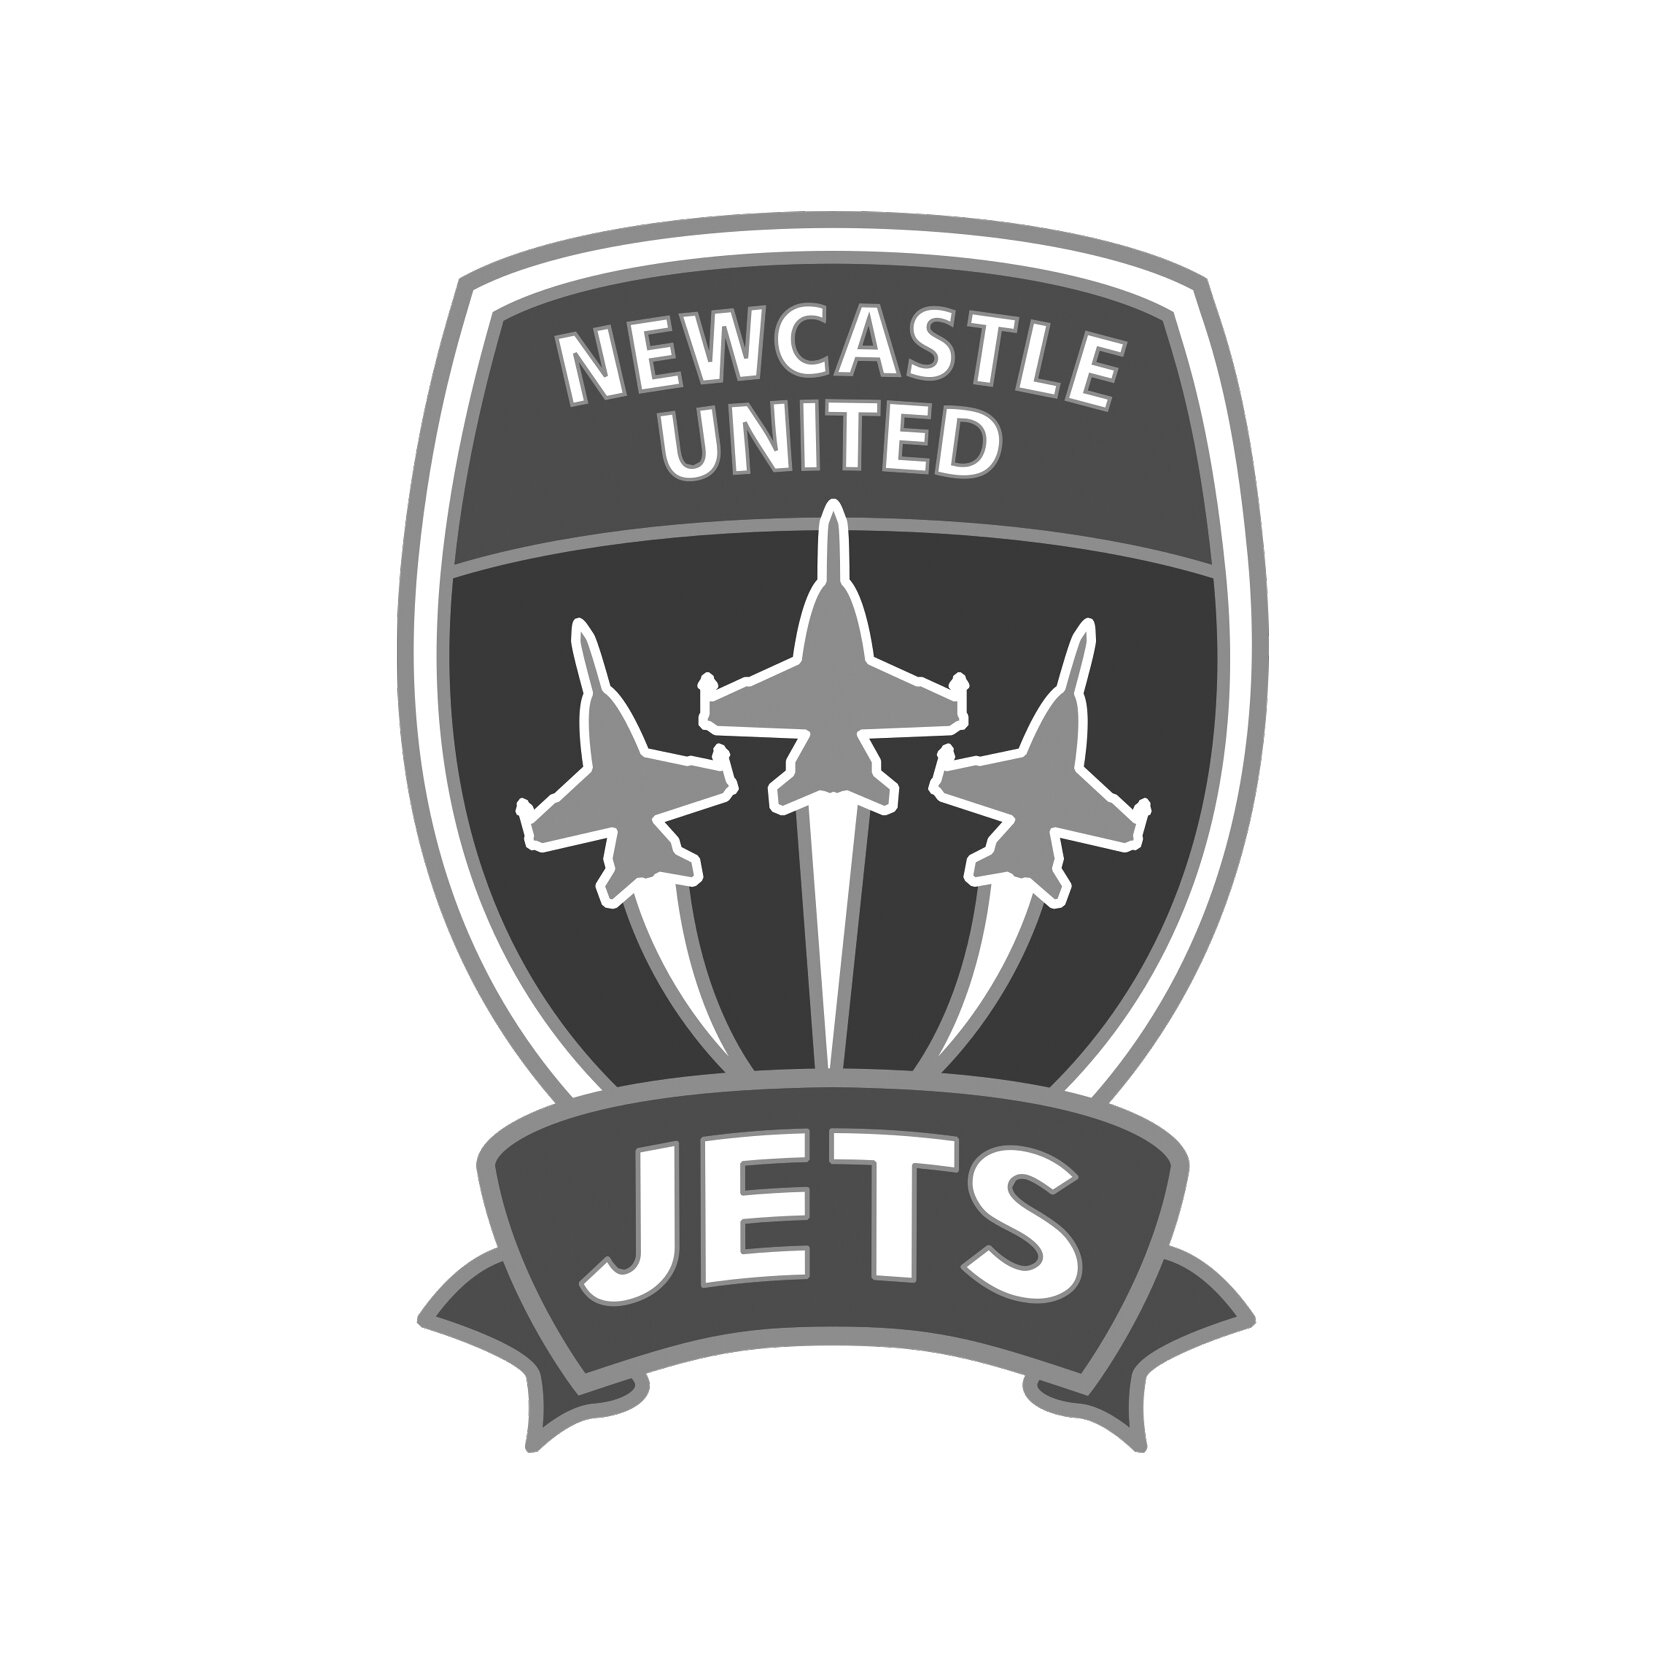 Newcastle United Jets (Copy) (Copy)